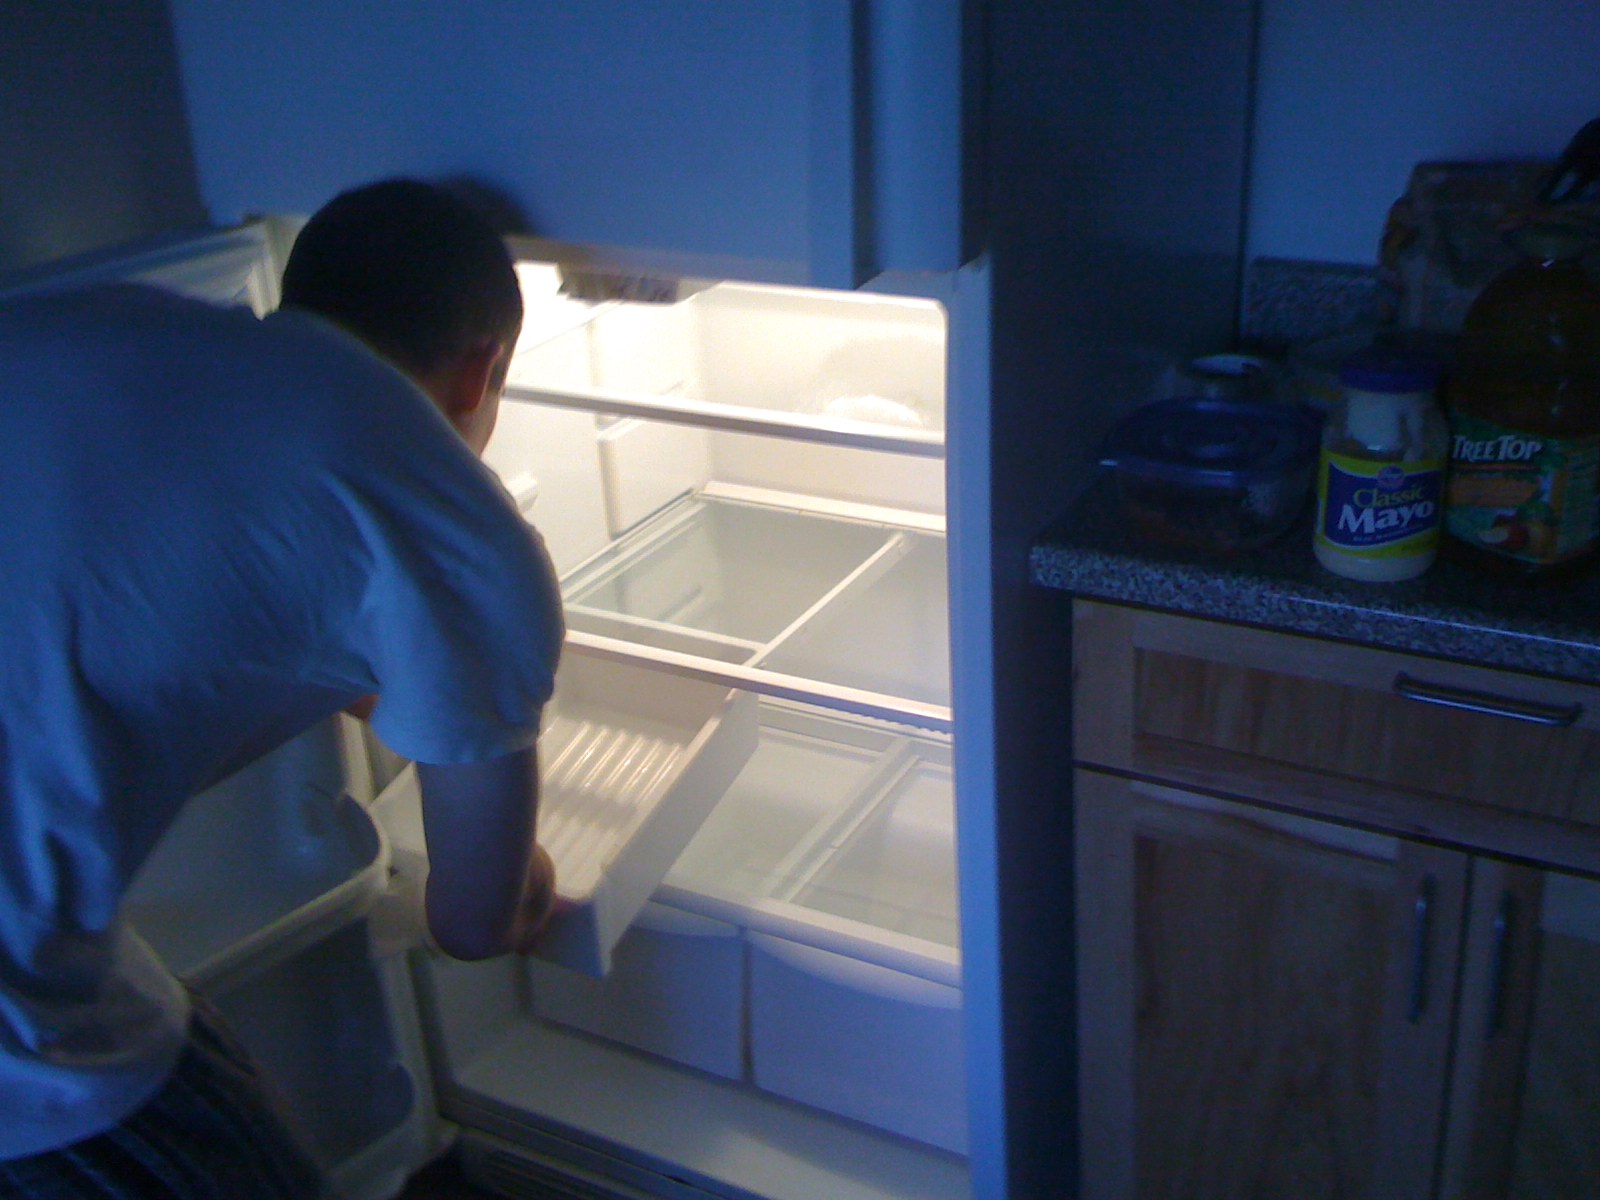 Открытый холодильник